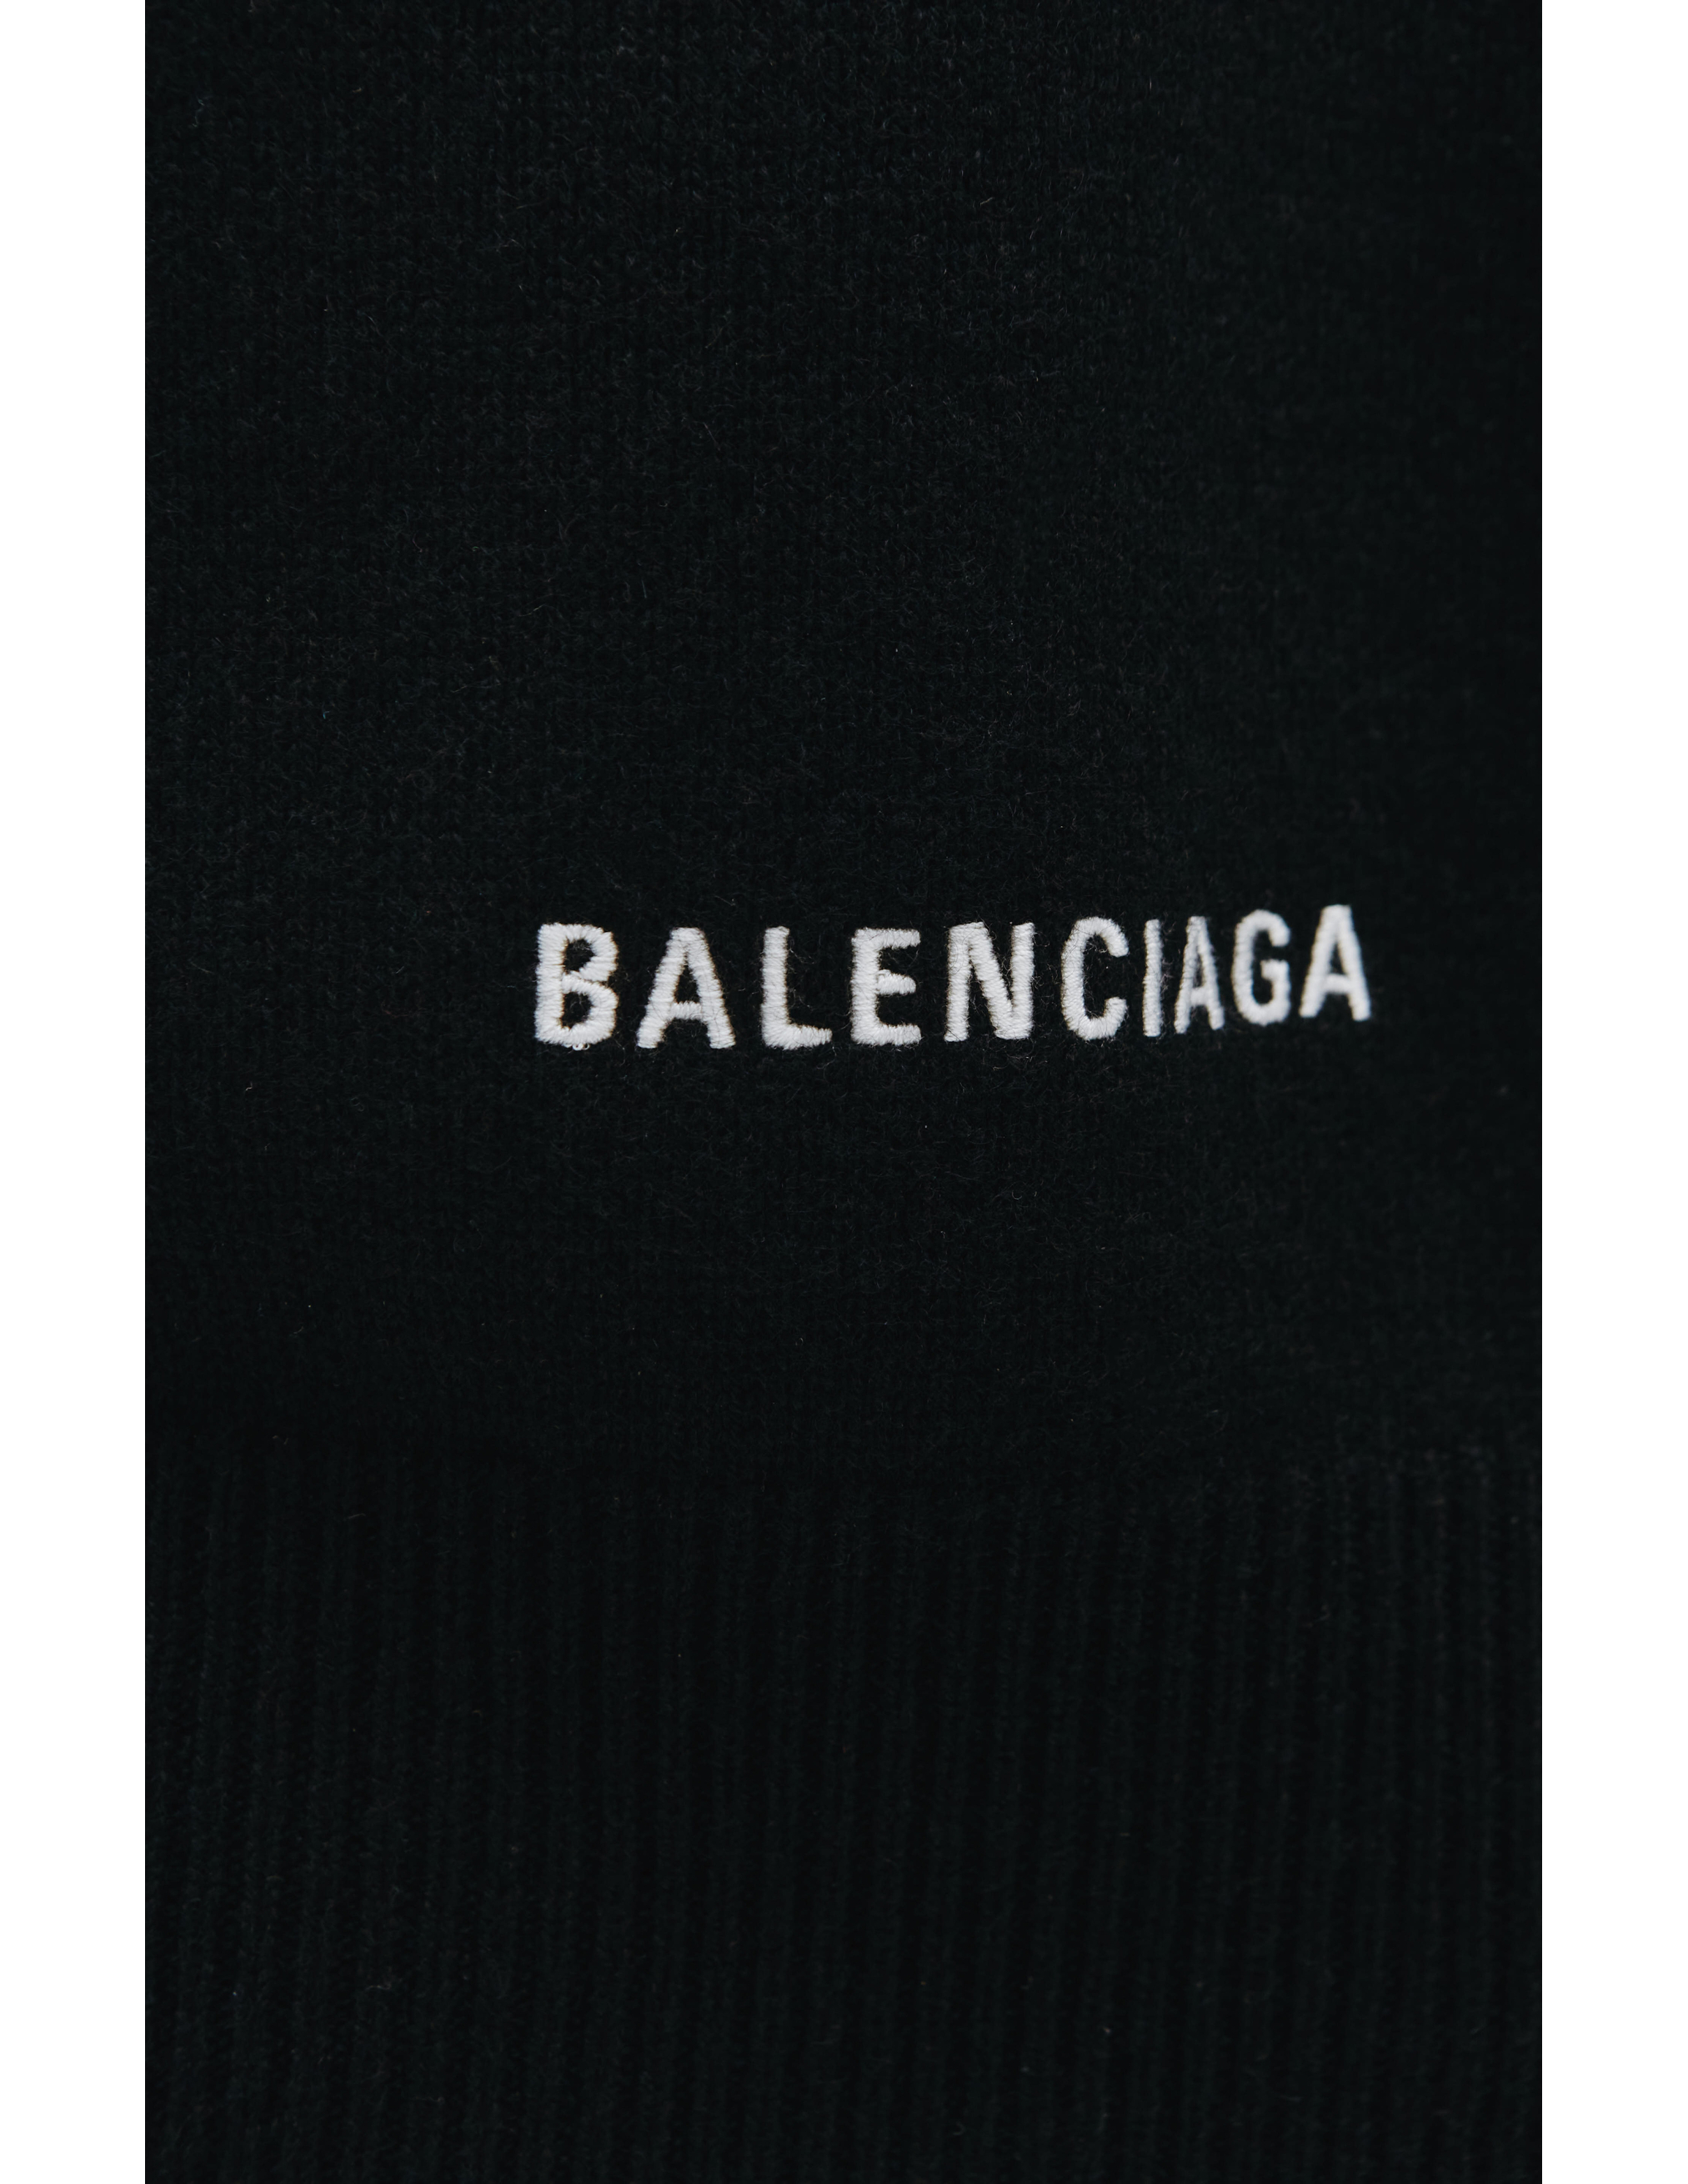 Черный свитер из кашемира Balenciaga 681983/T4124/1000, размер XL;L 681983/T4124/1000 - фото 4